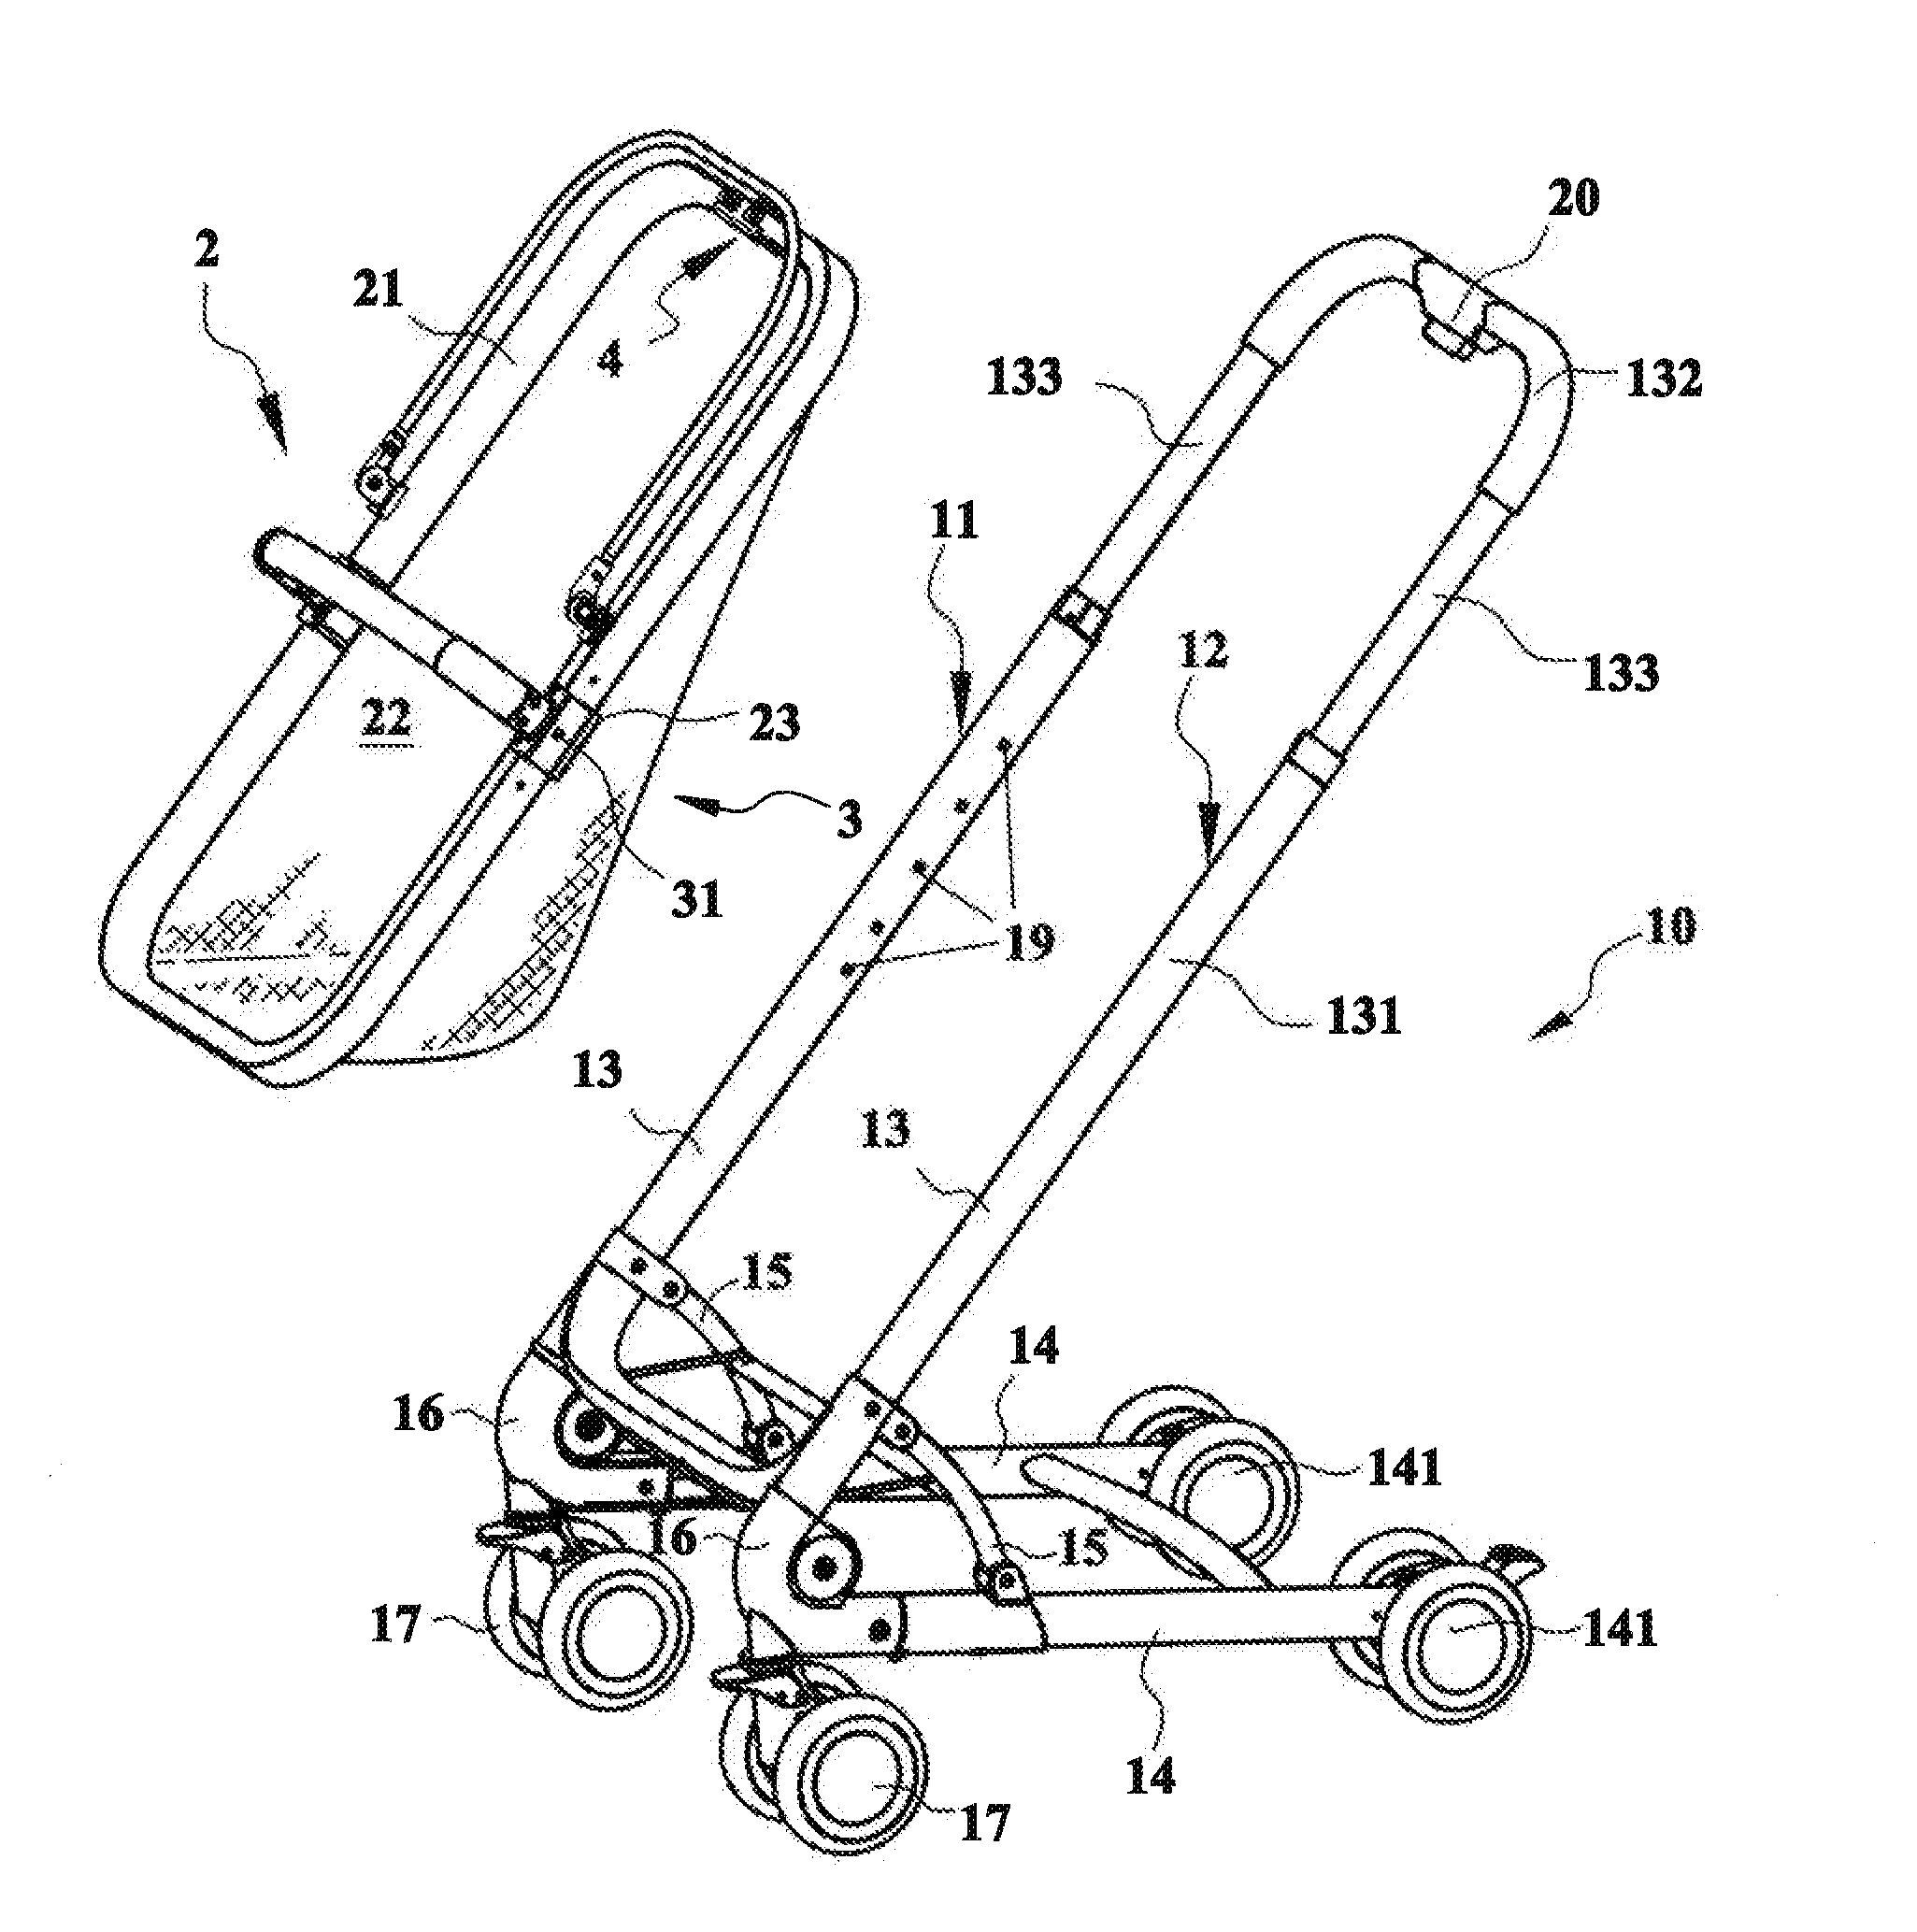 Seat adjustment mechanism for a stroller